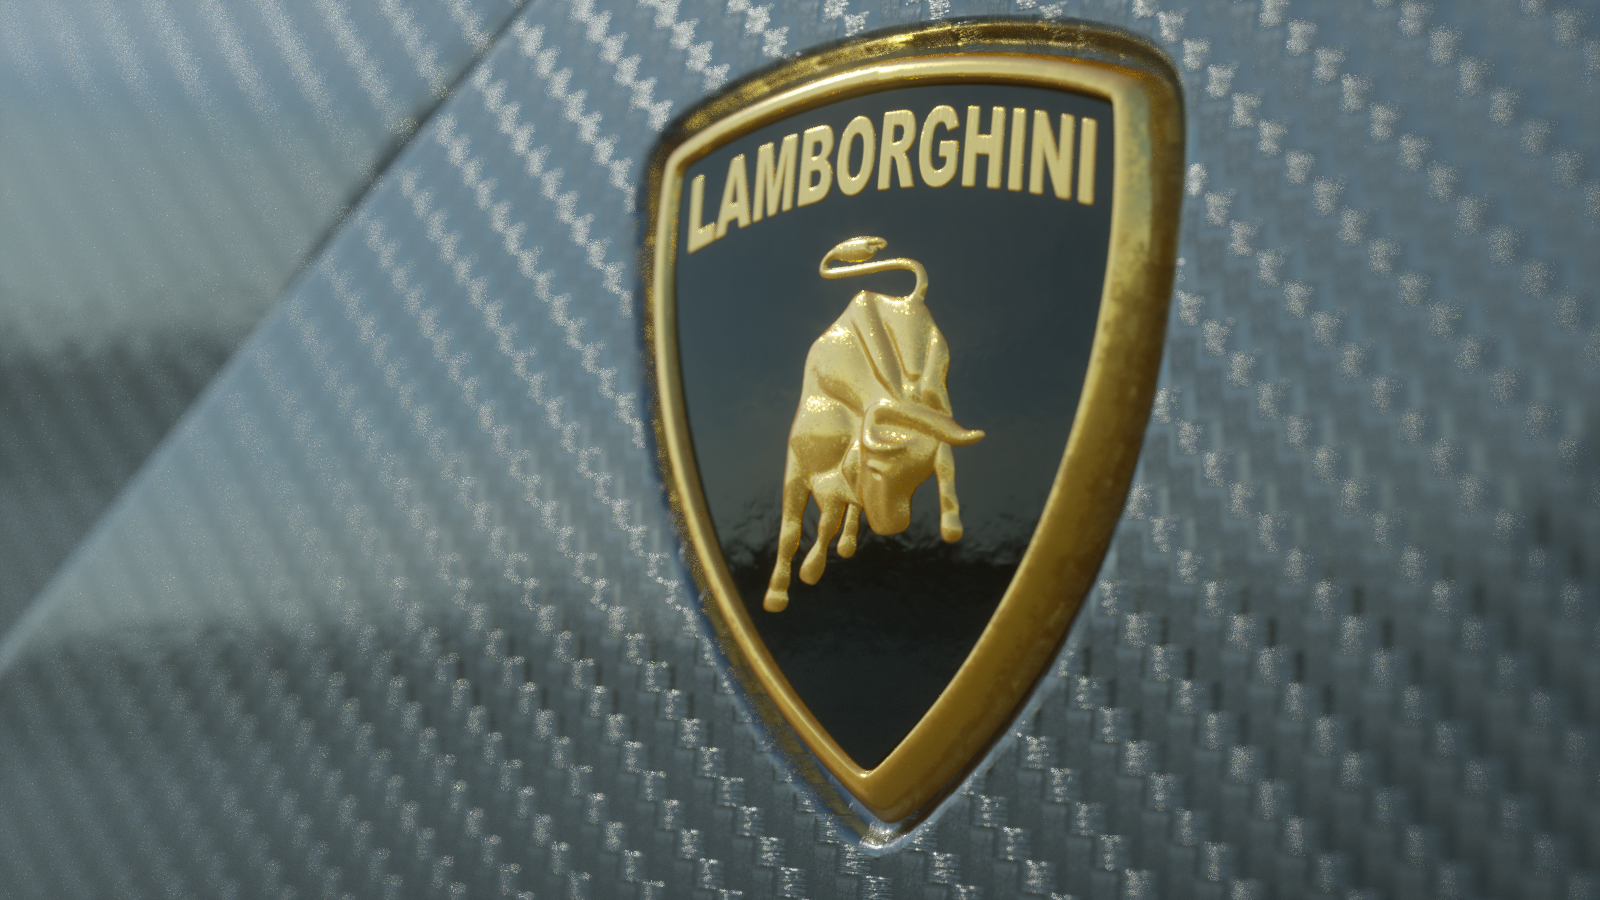 Lamborghini Centenario LP 770-4 - Car Render Challenge 2016